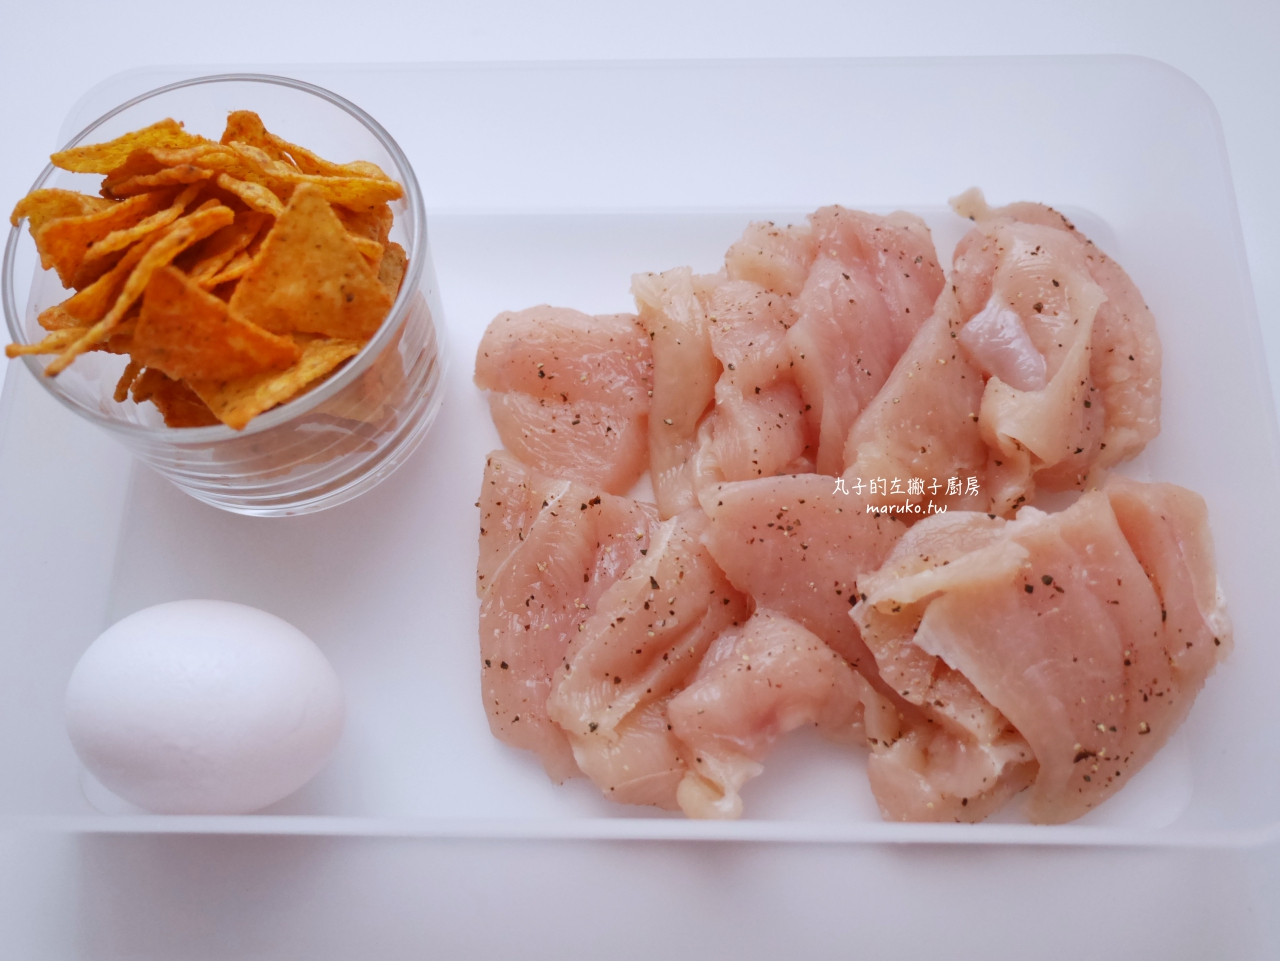 【食譜】起司玉米片炸雞 超簡單 快速炸雞做法 雞胸肉 免油炸氣炸鍋食譜 @Maruko與美食有個約會